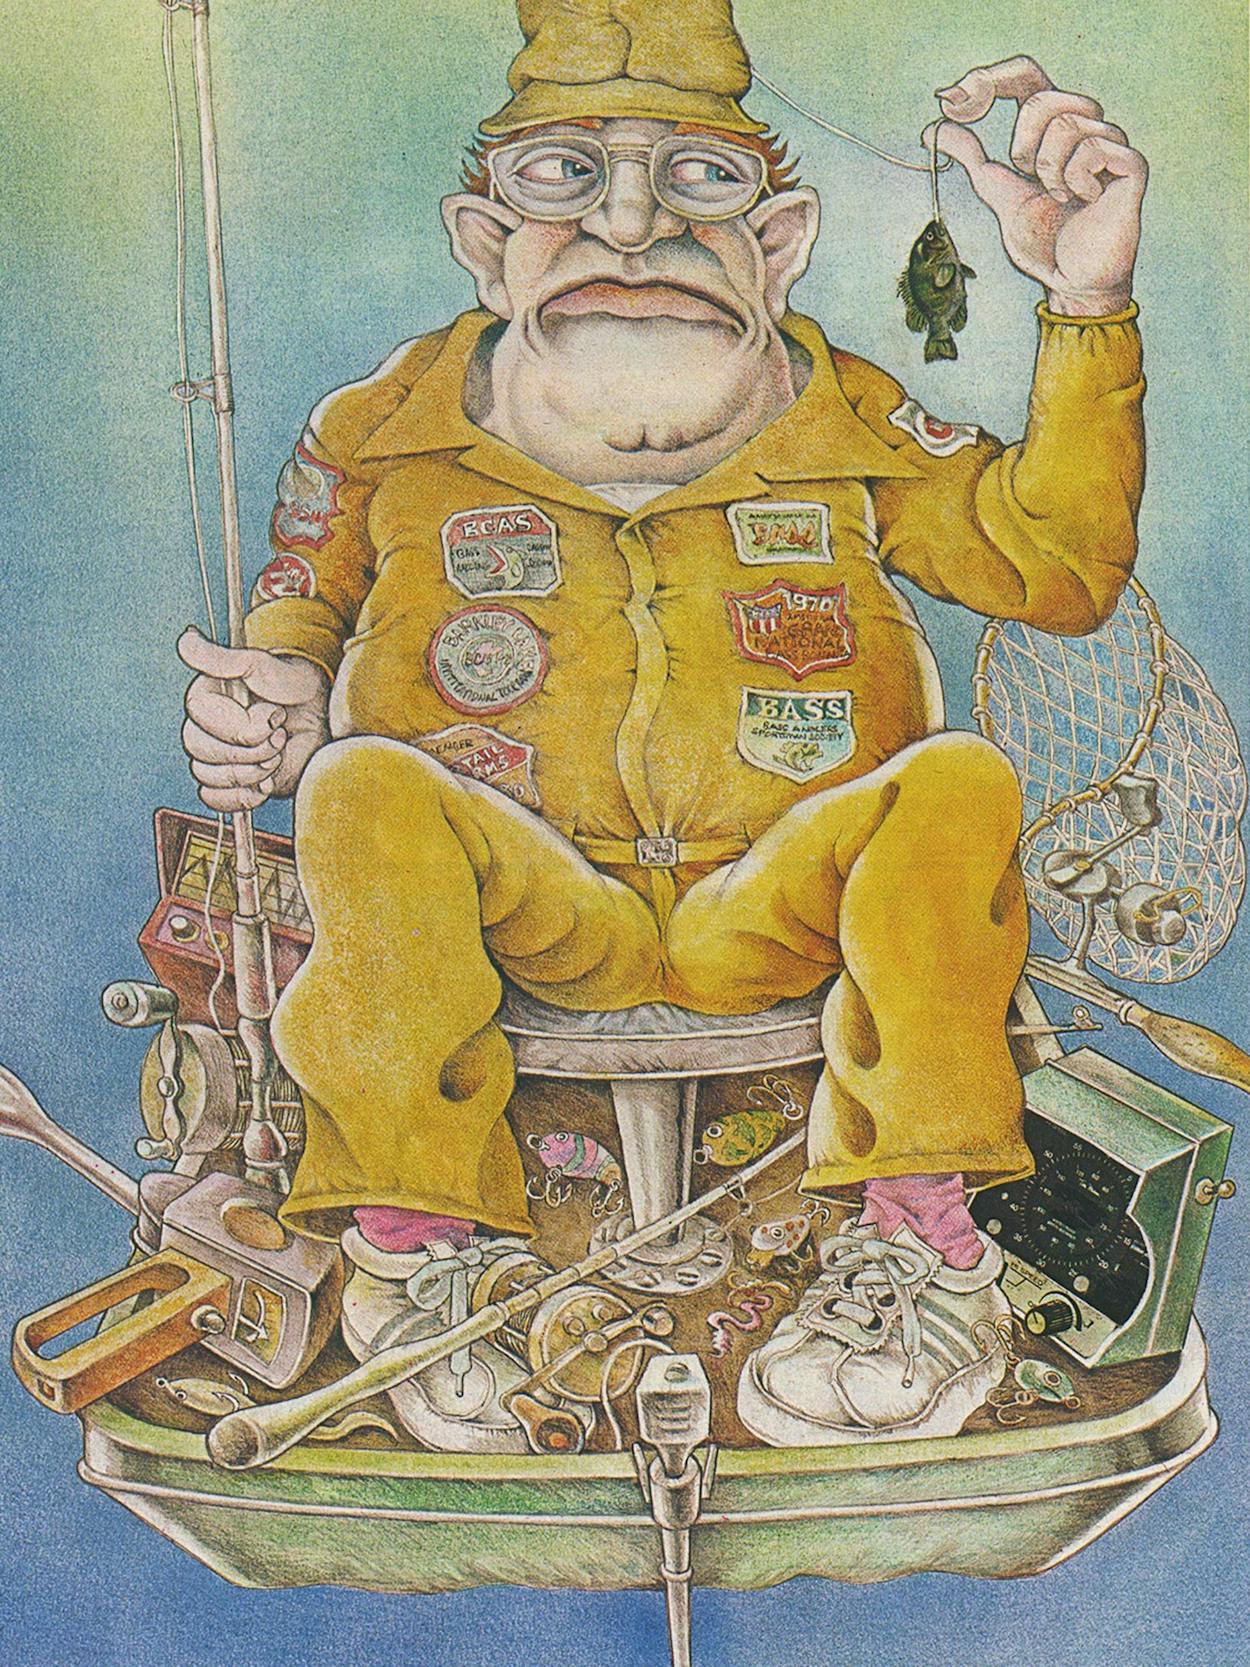 bass-fishing-in-america-oct-1976-hero1